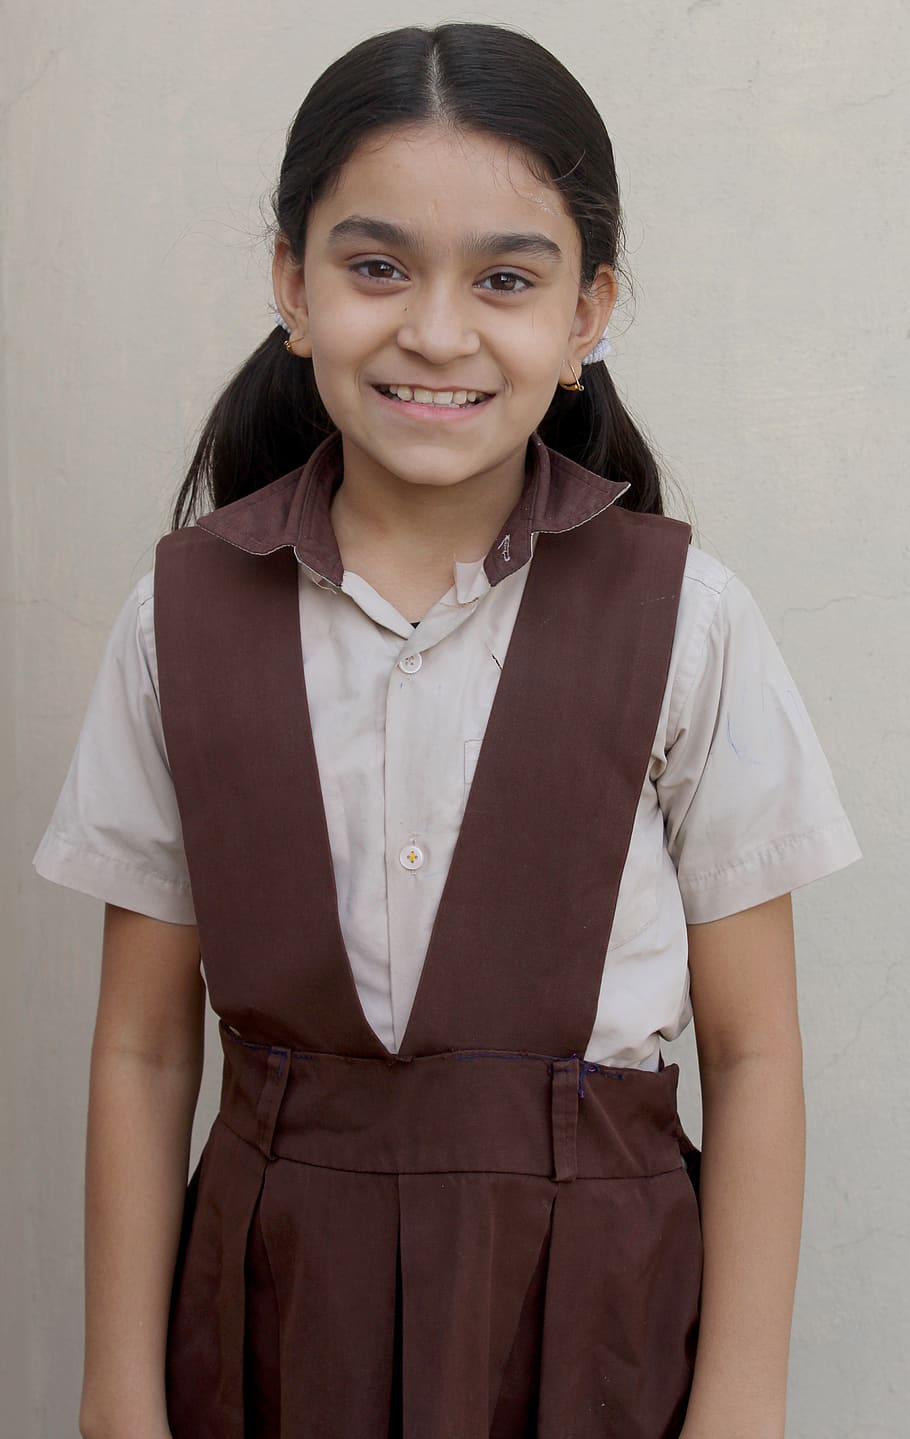 escola, escola indiana, vestido da escola, linda garota, menina, alegria, índios, diversão, feliz, sorriso